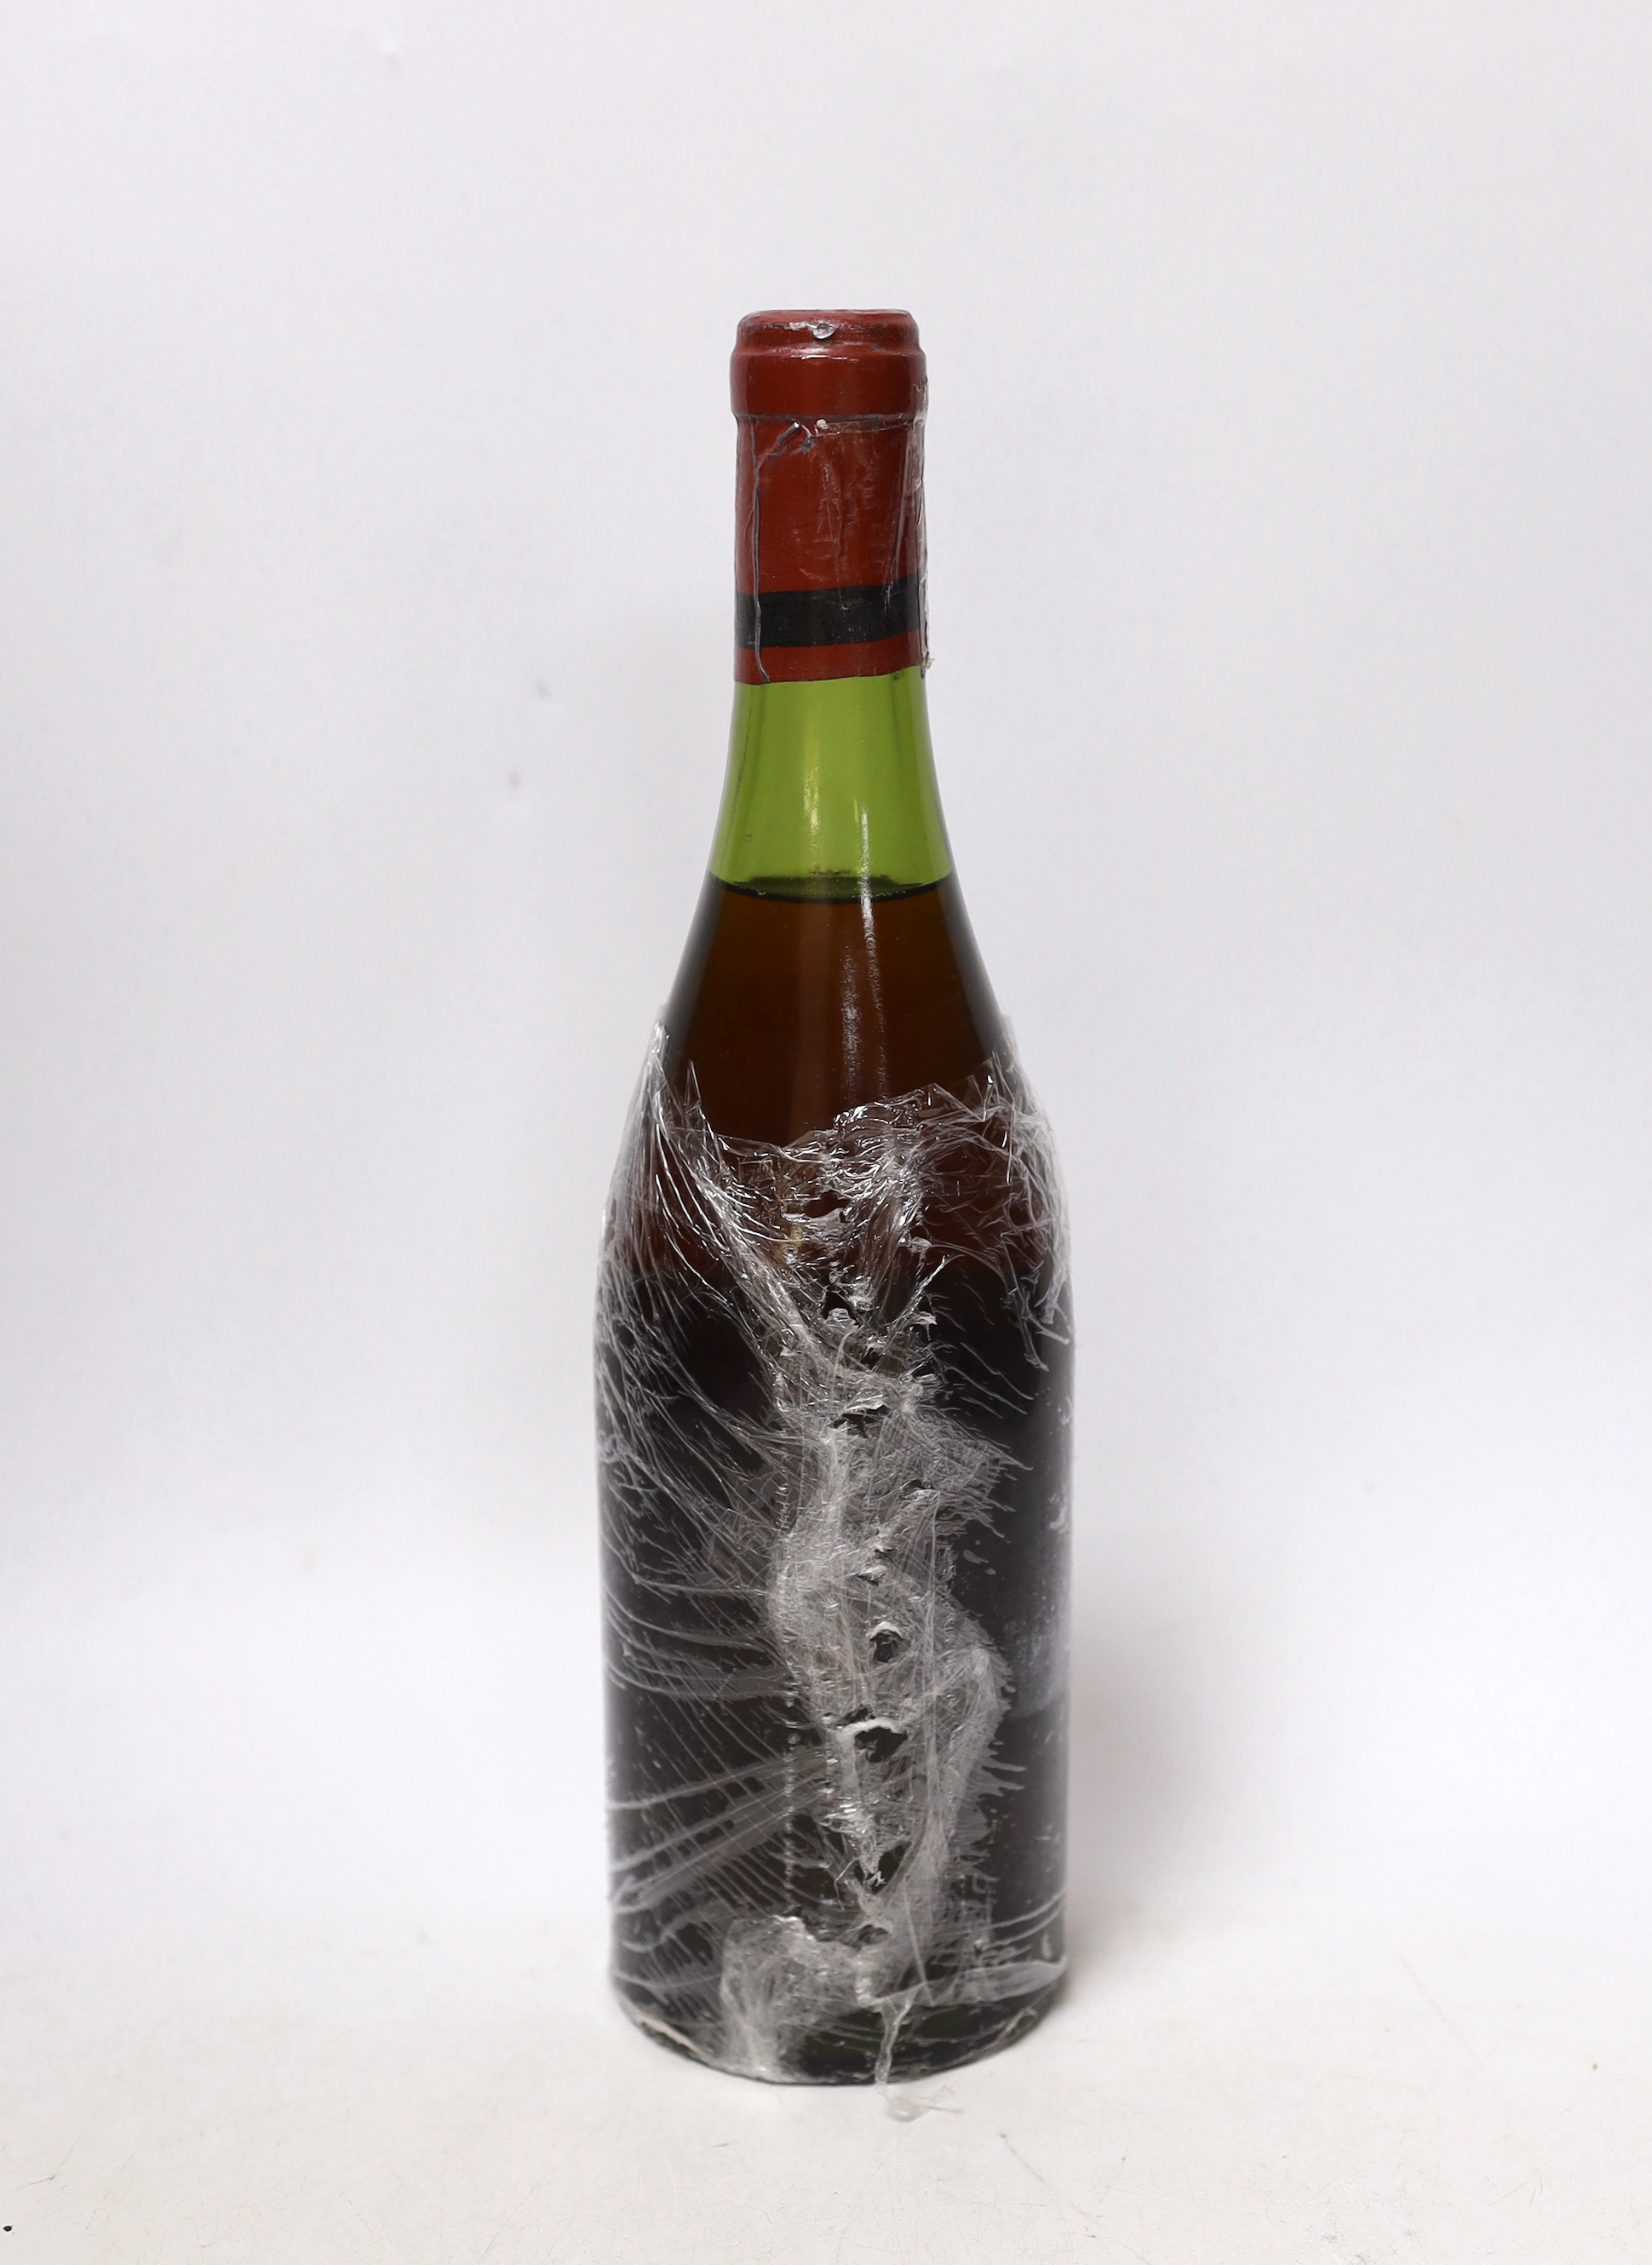 A bottle of La Tache Romanée-Conti 1967, No.13793